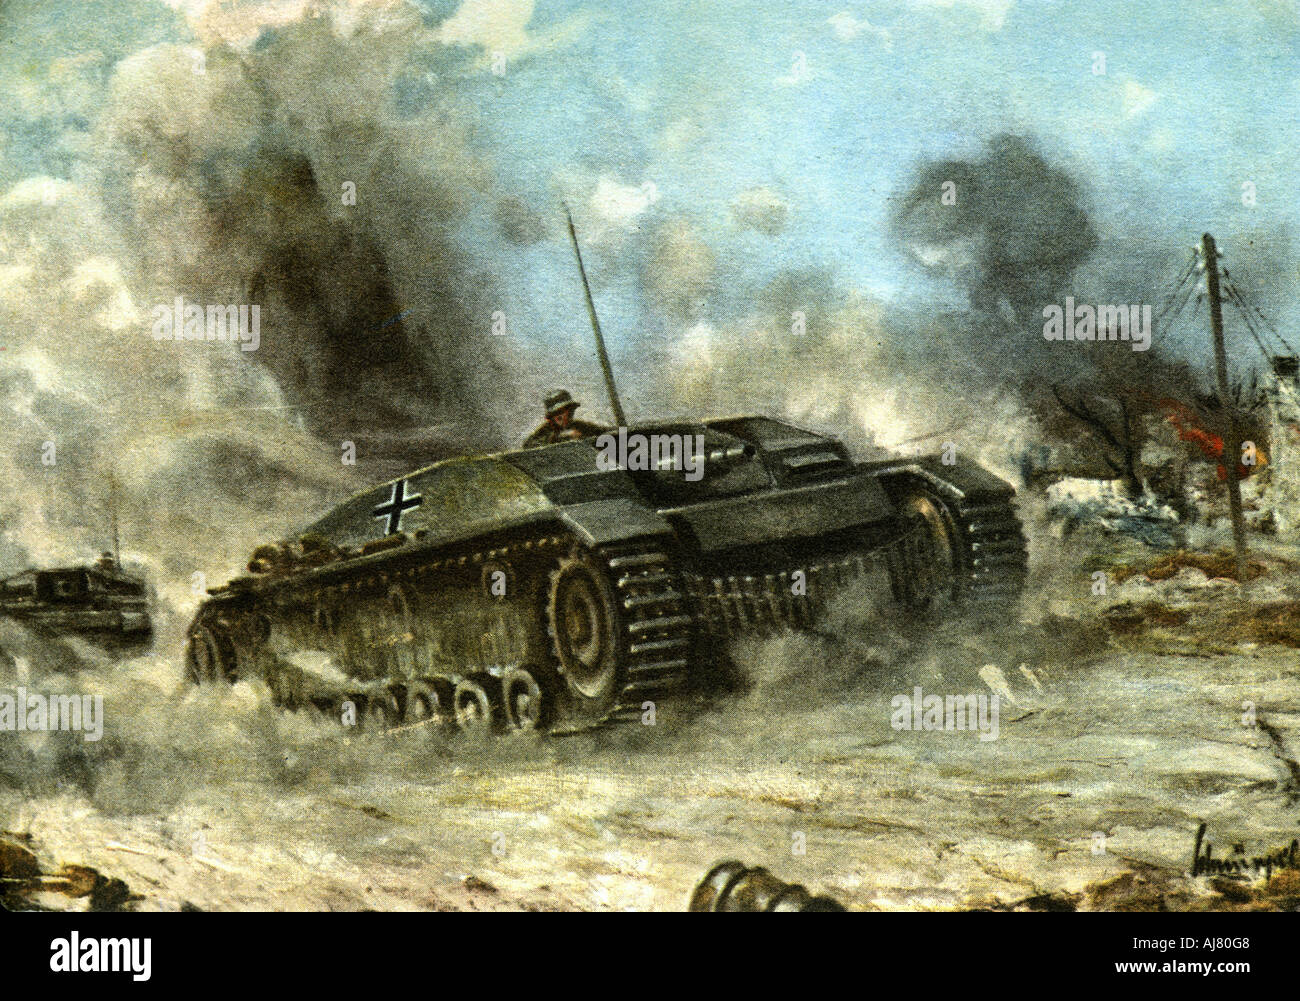 German tank en action sur le front russe, la seconde guerre mondiale, 1942-1943. Artiste : Anon Banque D'Images